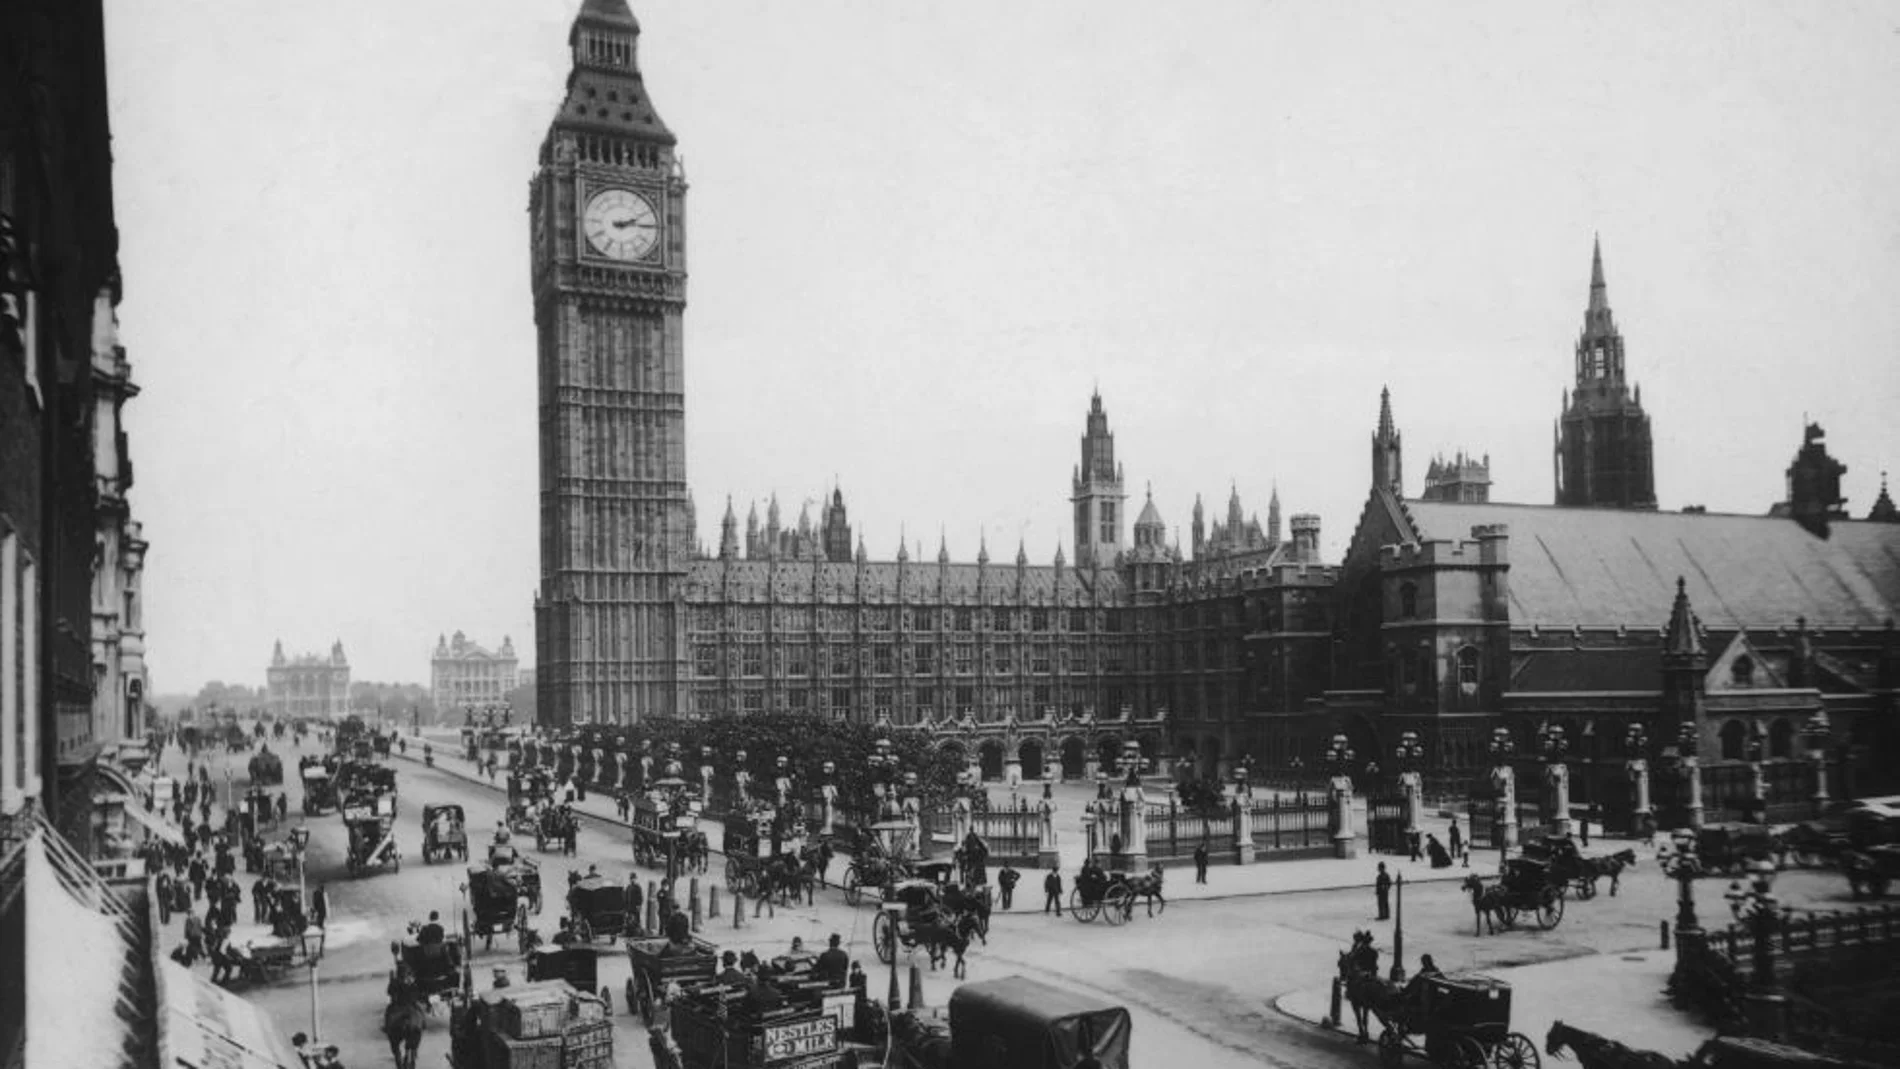 El Parlamento y el Big Ben cerca de 1850, escenario de la novela de Elizabeth MacNeal